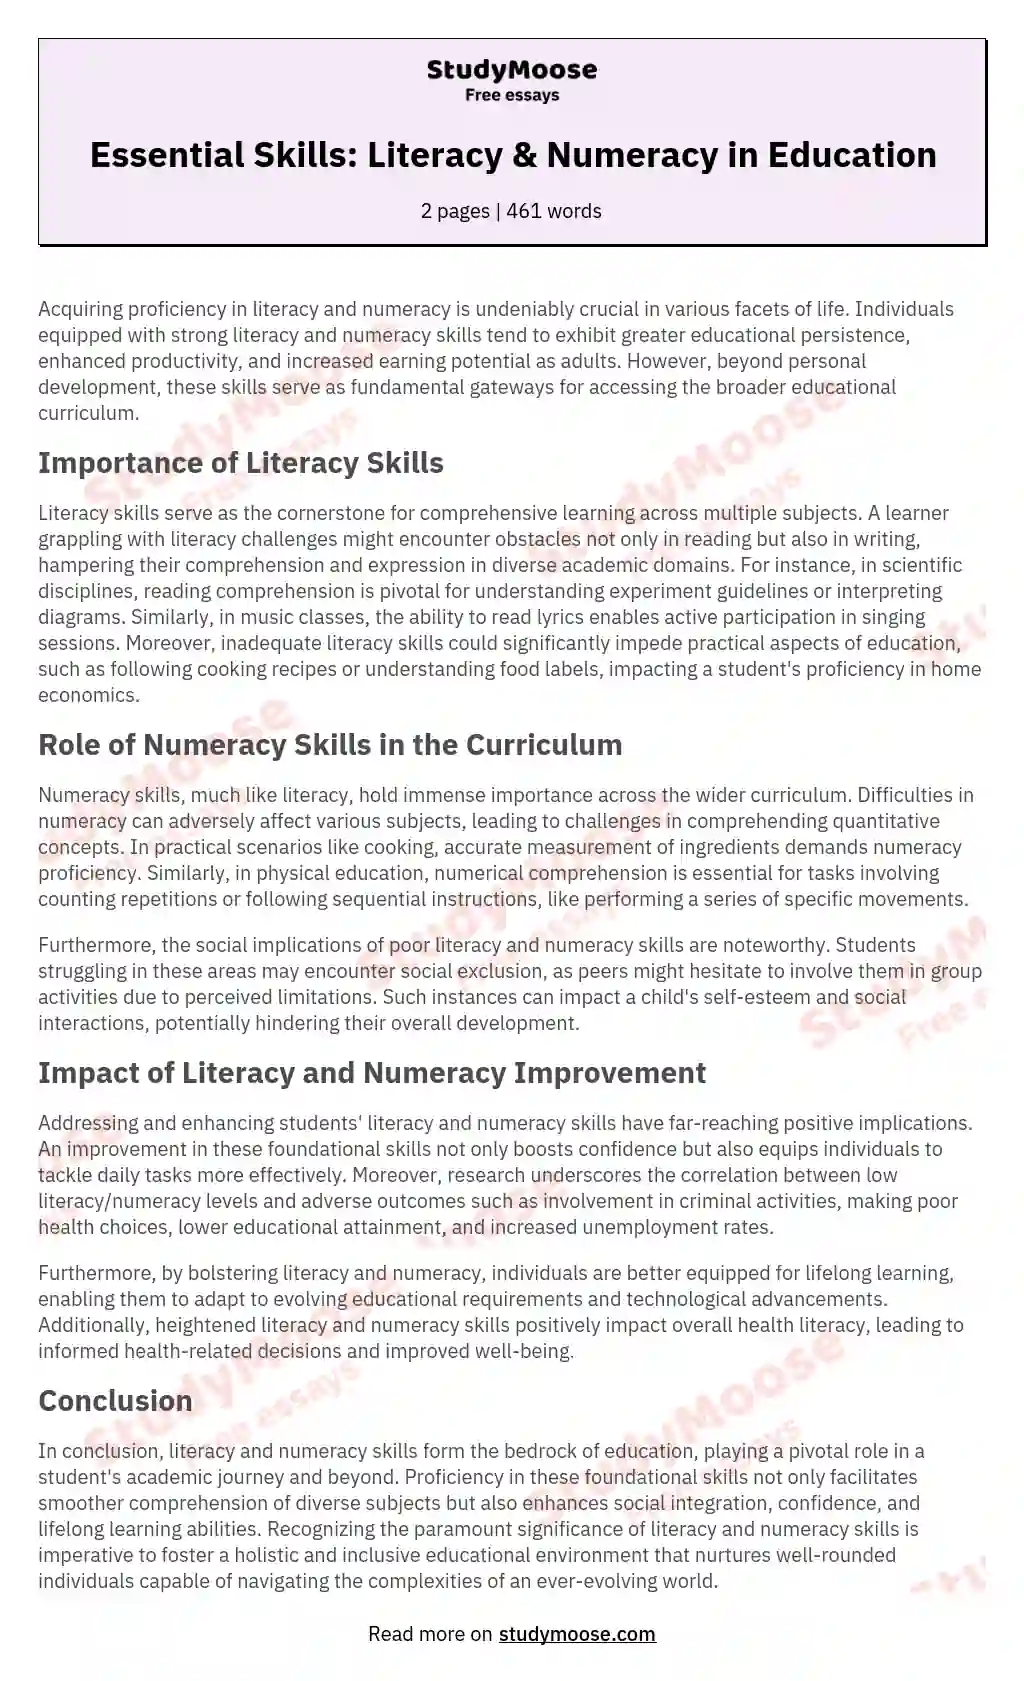 Essential Skills: Literacy & Numeracy in Education essay